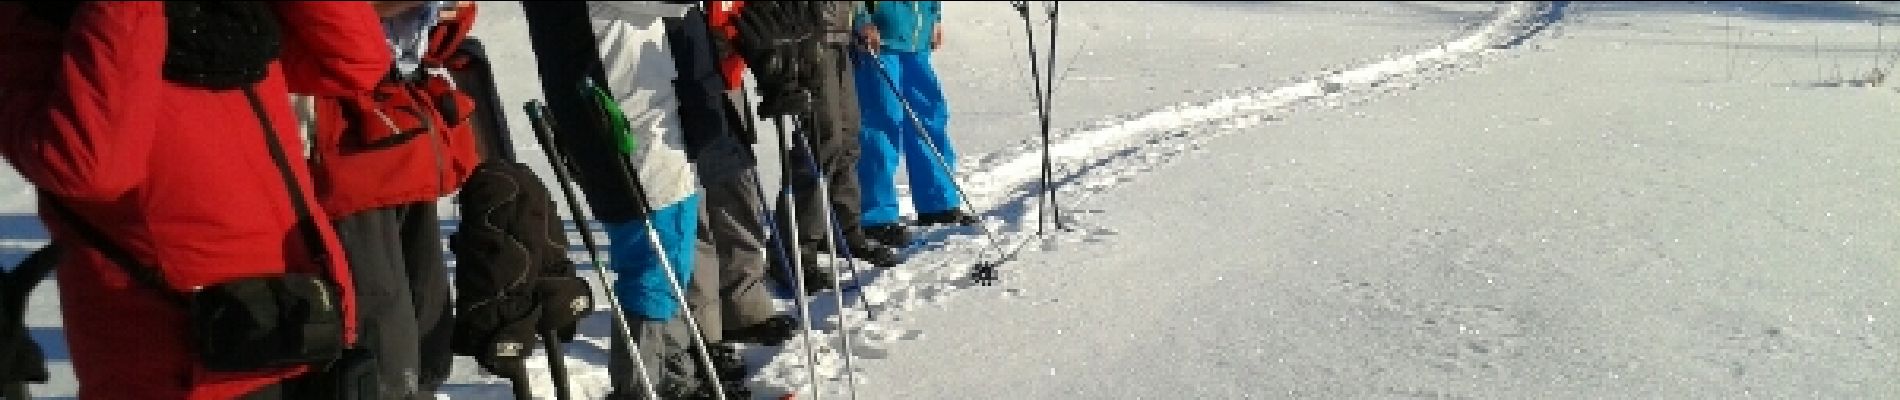 Trail Snowshoes Le Thillot - la vierge fugueuse - Photo